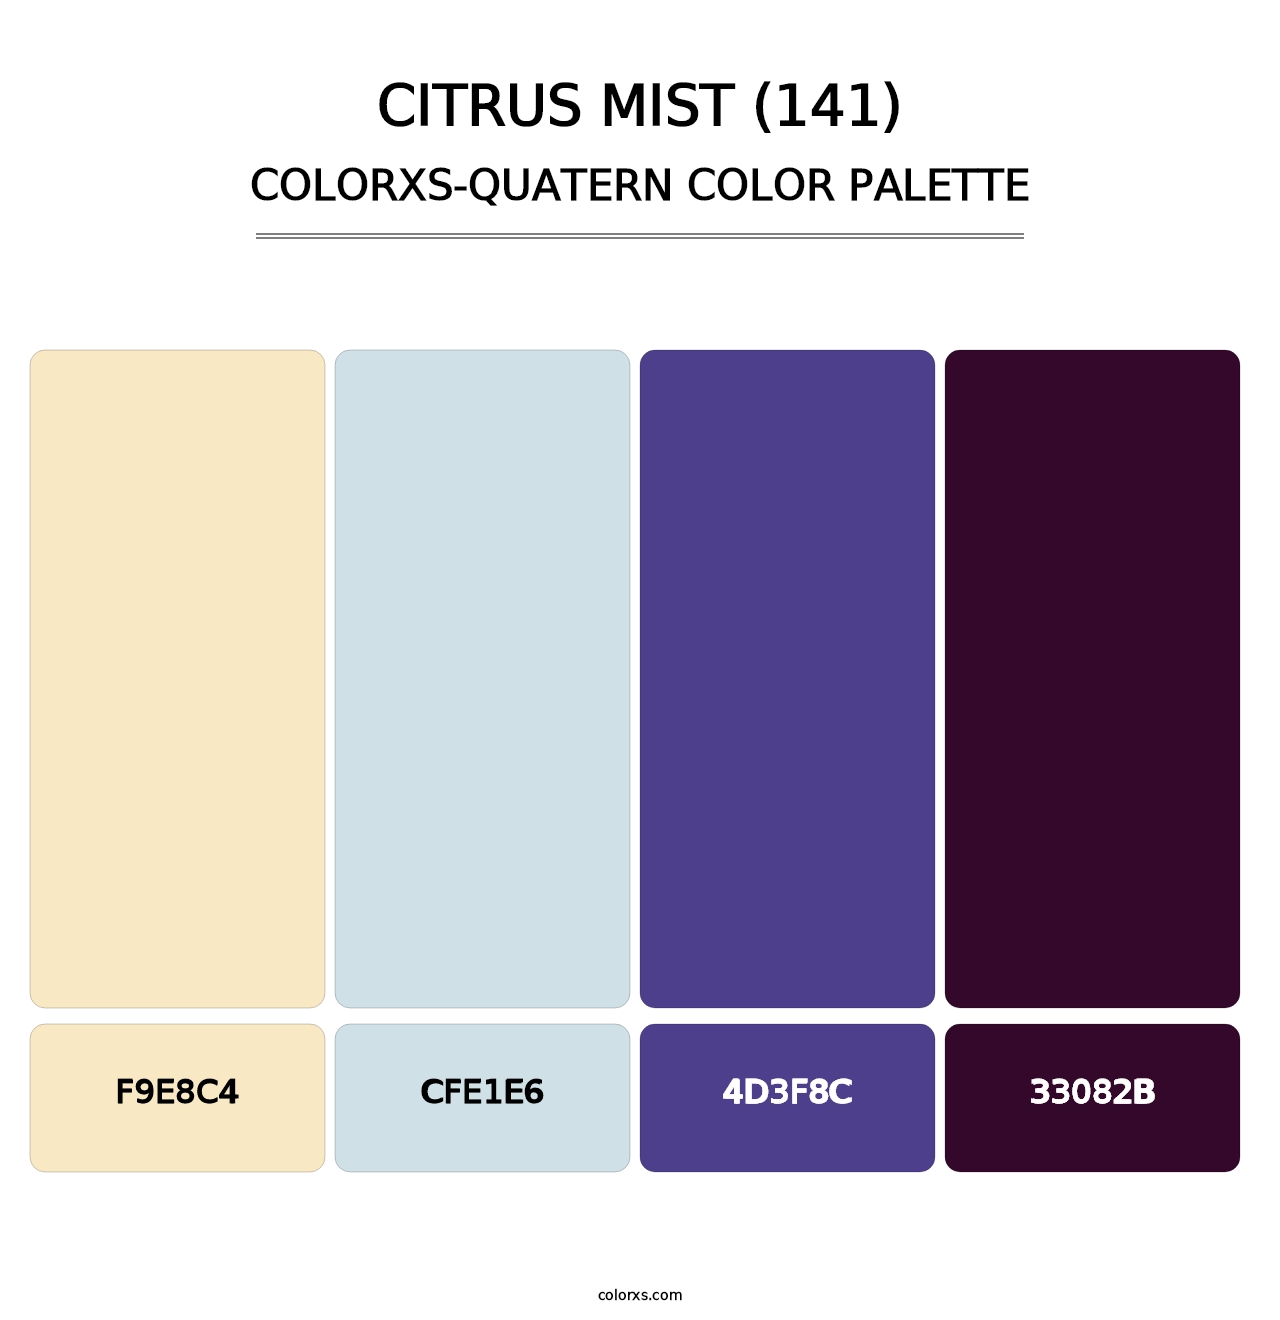 Citrus Mist (141) - Colorxs Quatern Palette